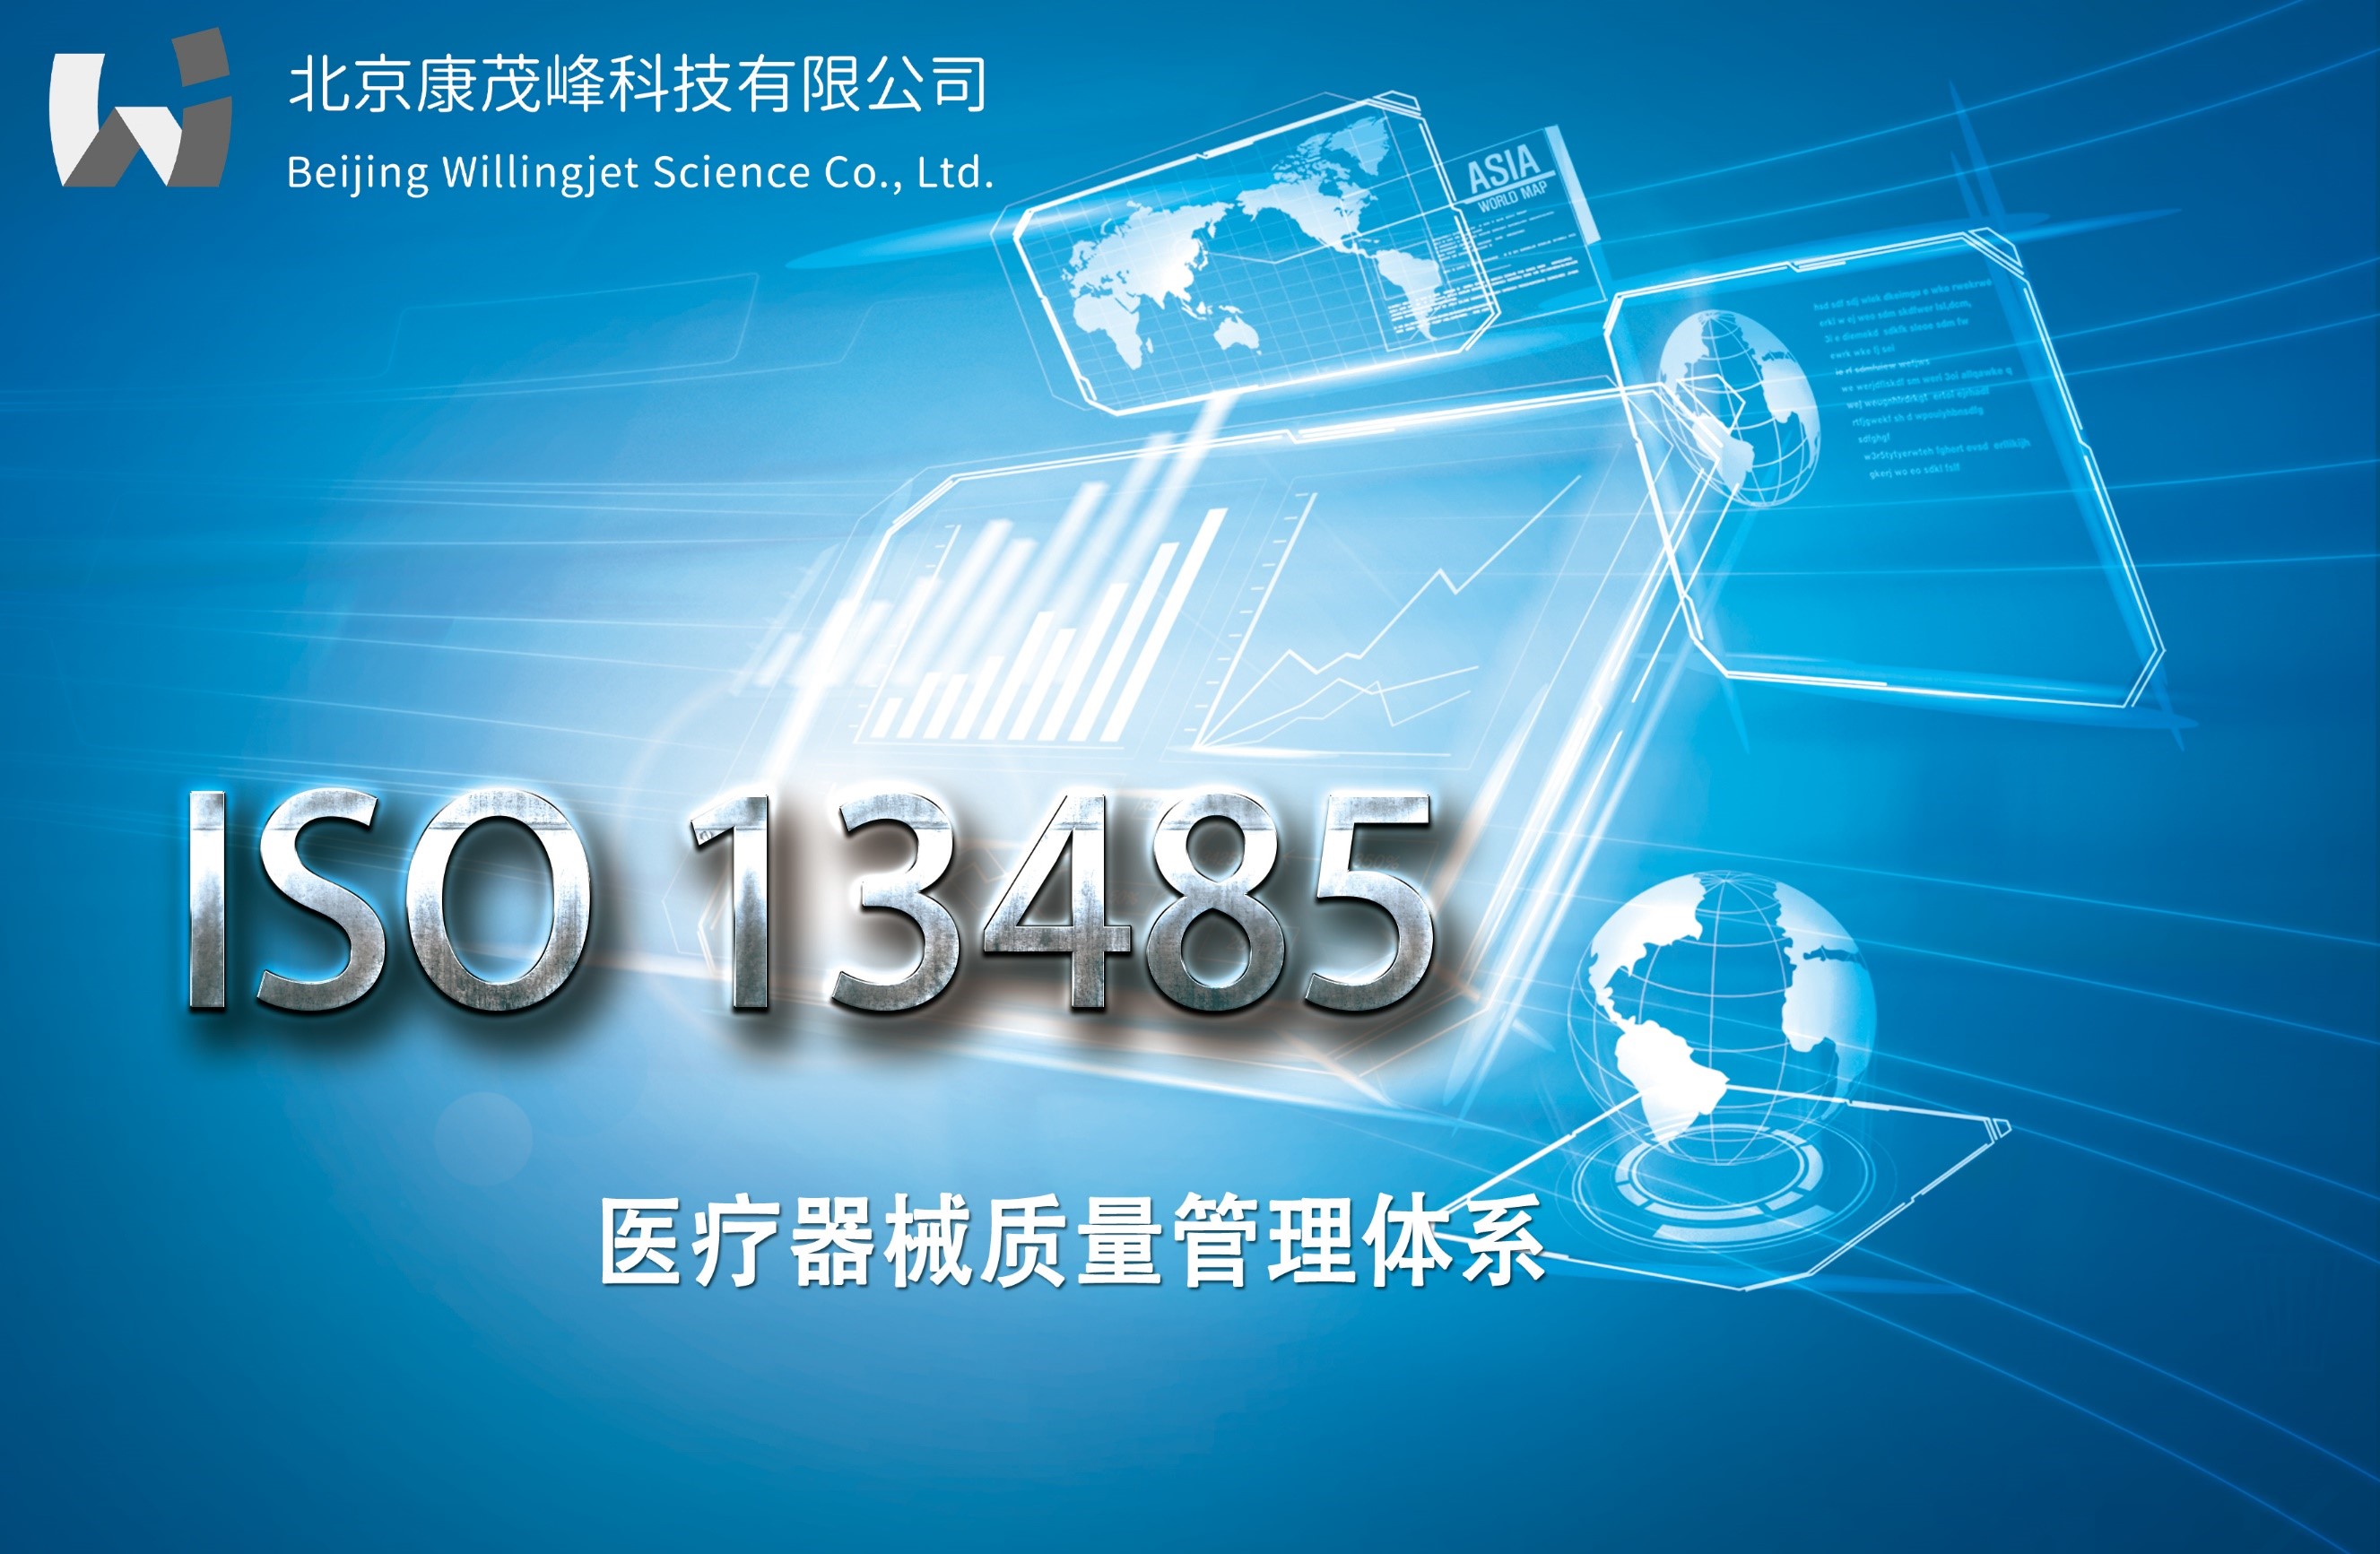 康茂峰医学翻译顺利通过医疗器械质量管理体系ISO 13485认证